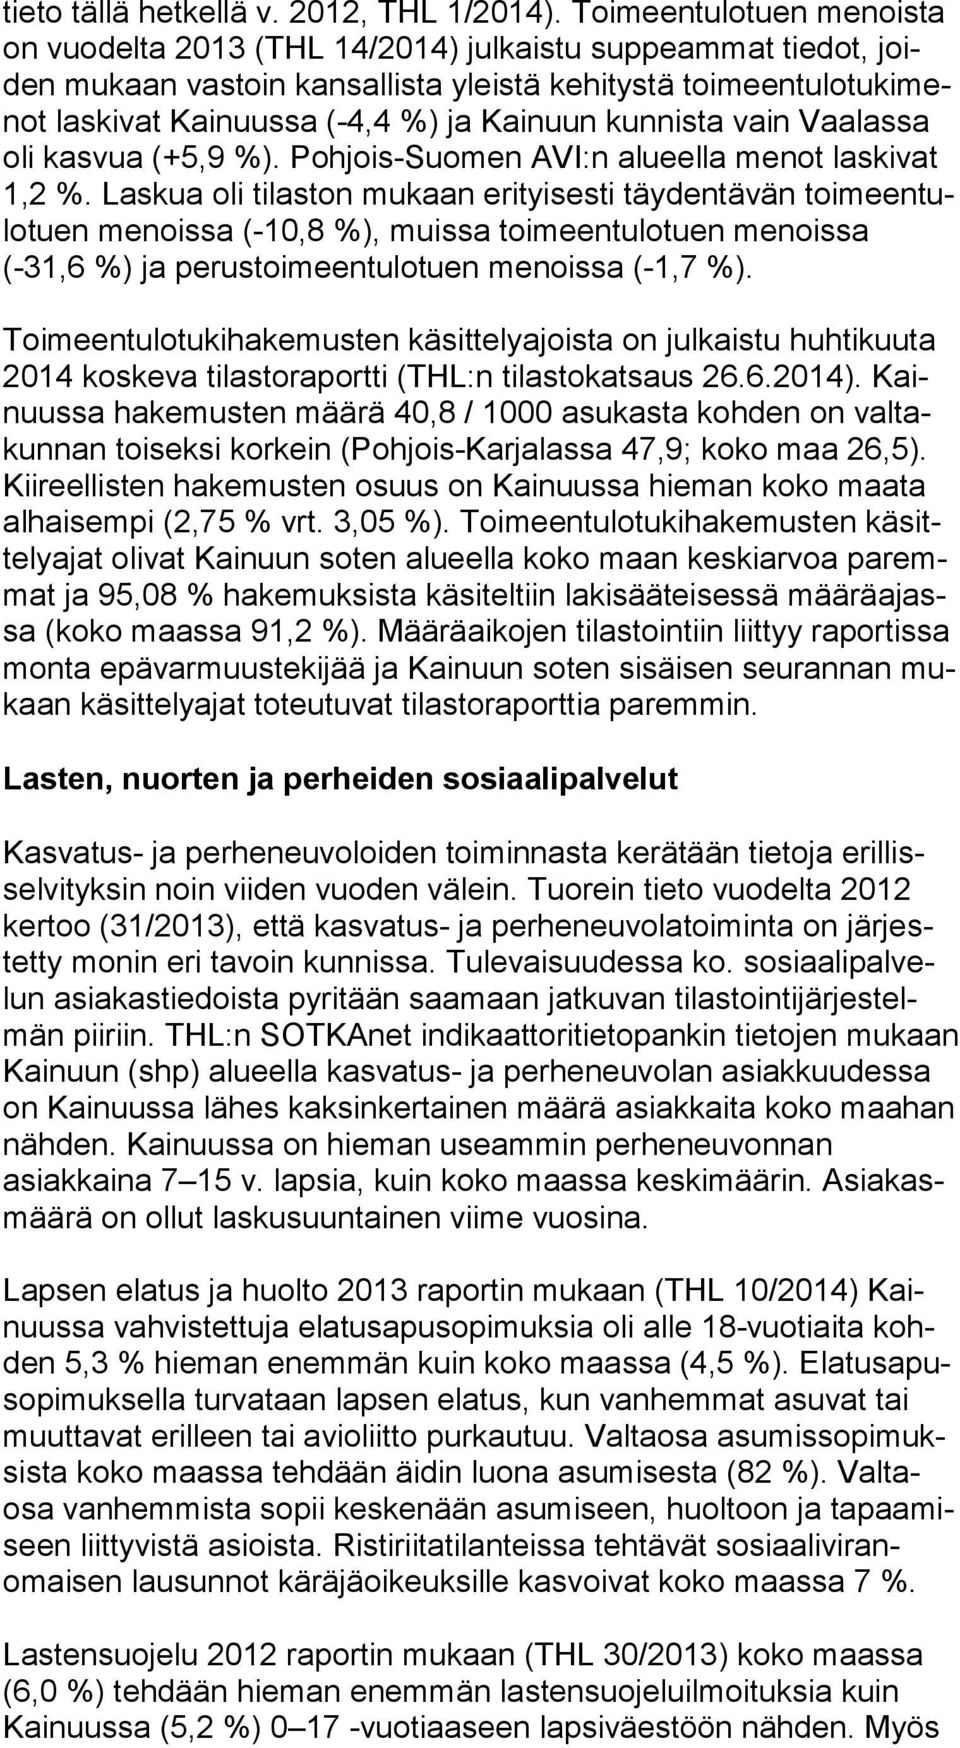 Kainuun kunnista vain Vaalassa oli kasvua (+5,9 %). Pohjois-Suomen AVI:n alueella menot laskivat 1,2 %.